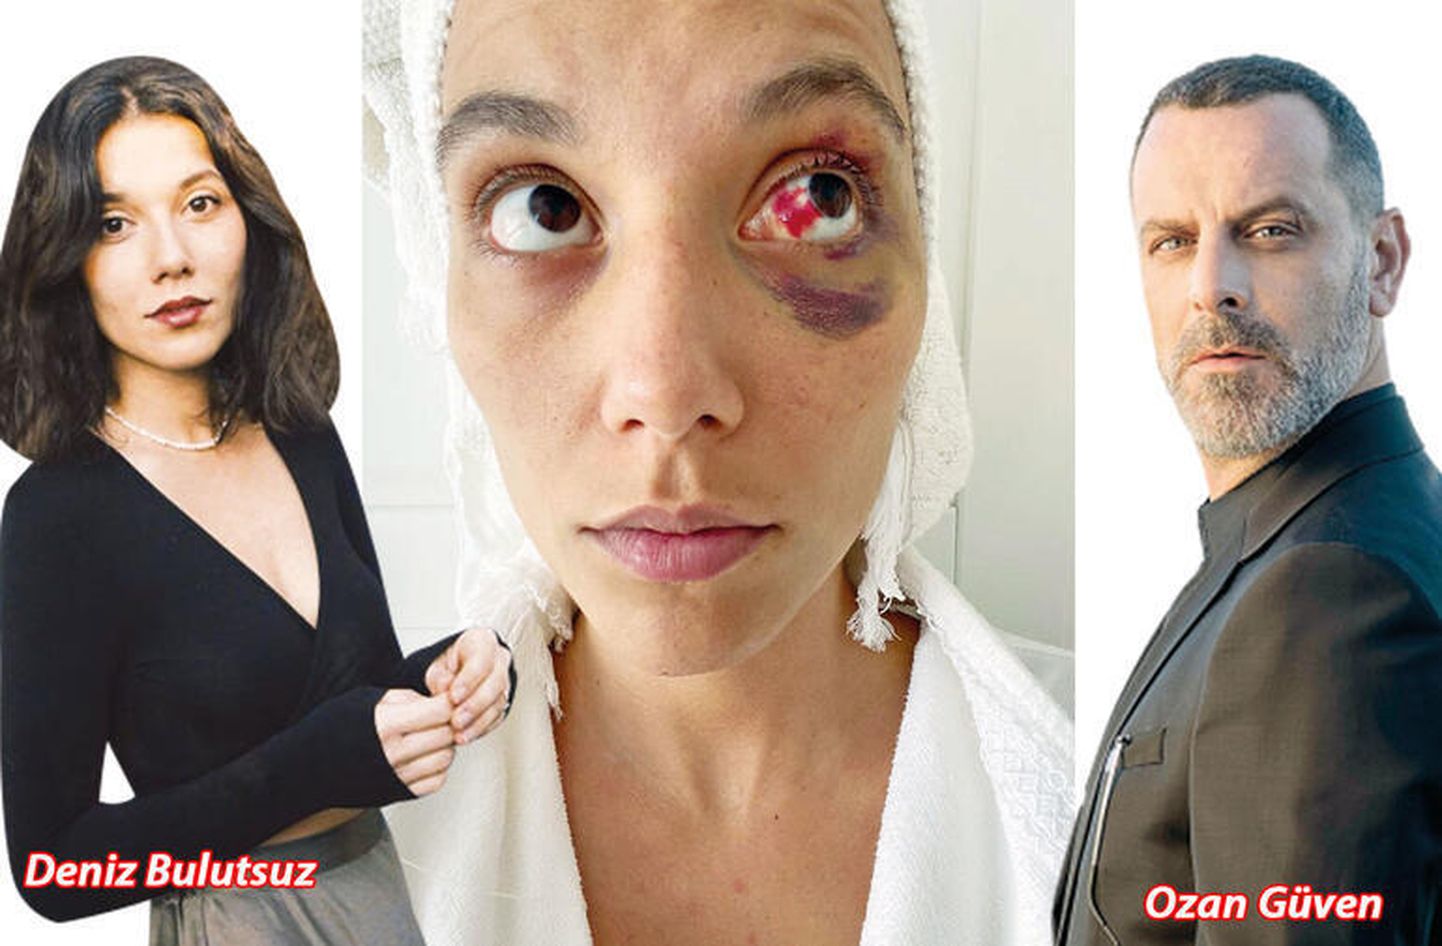 Дениз Булусуз пострадала от рук своего парня и актера Озана Гювена.